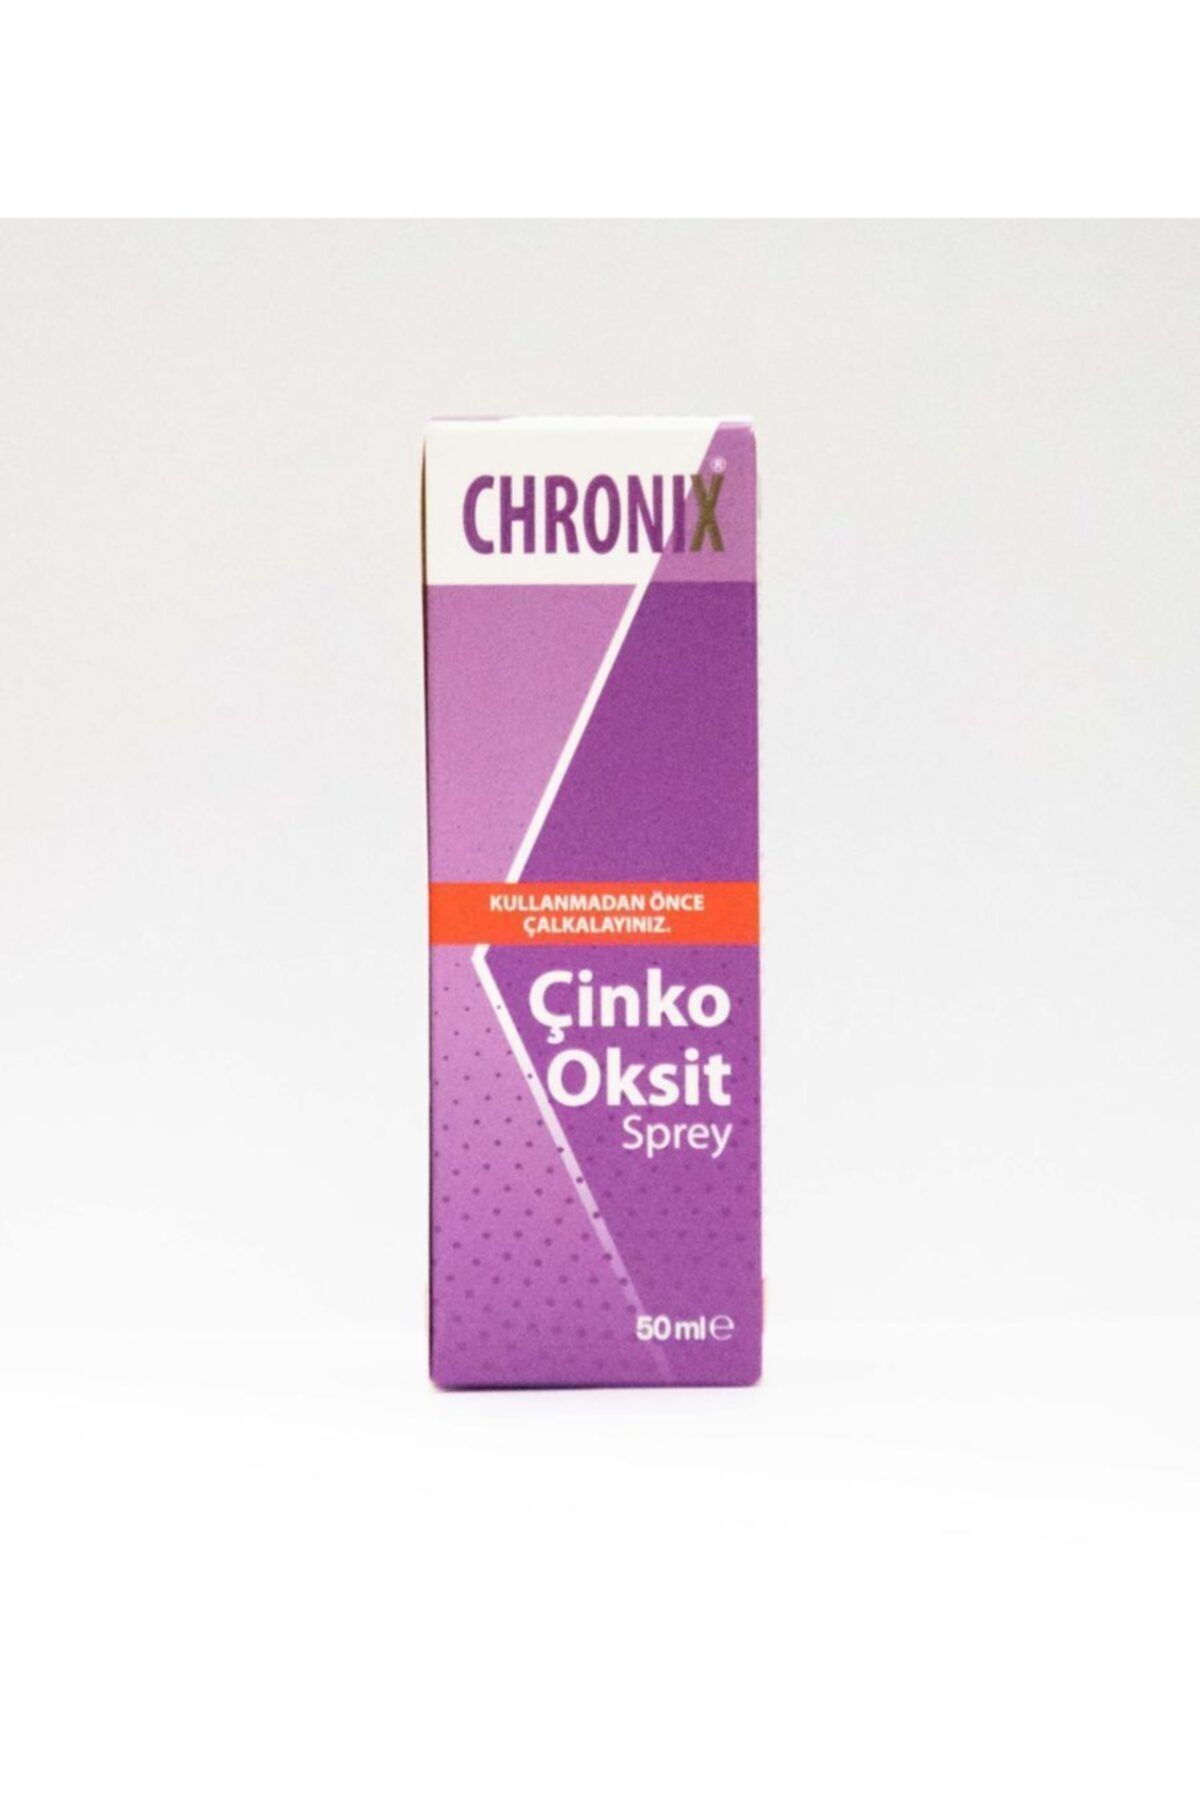 Chronix Çinko Oksit Sprey